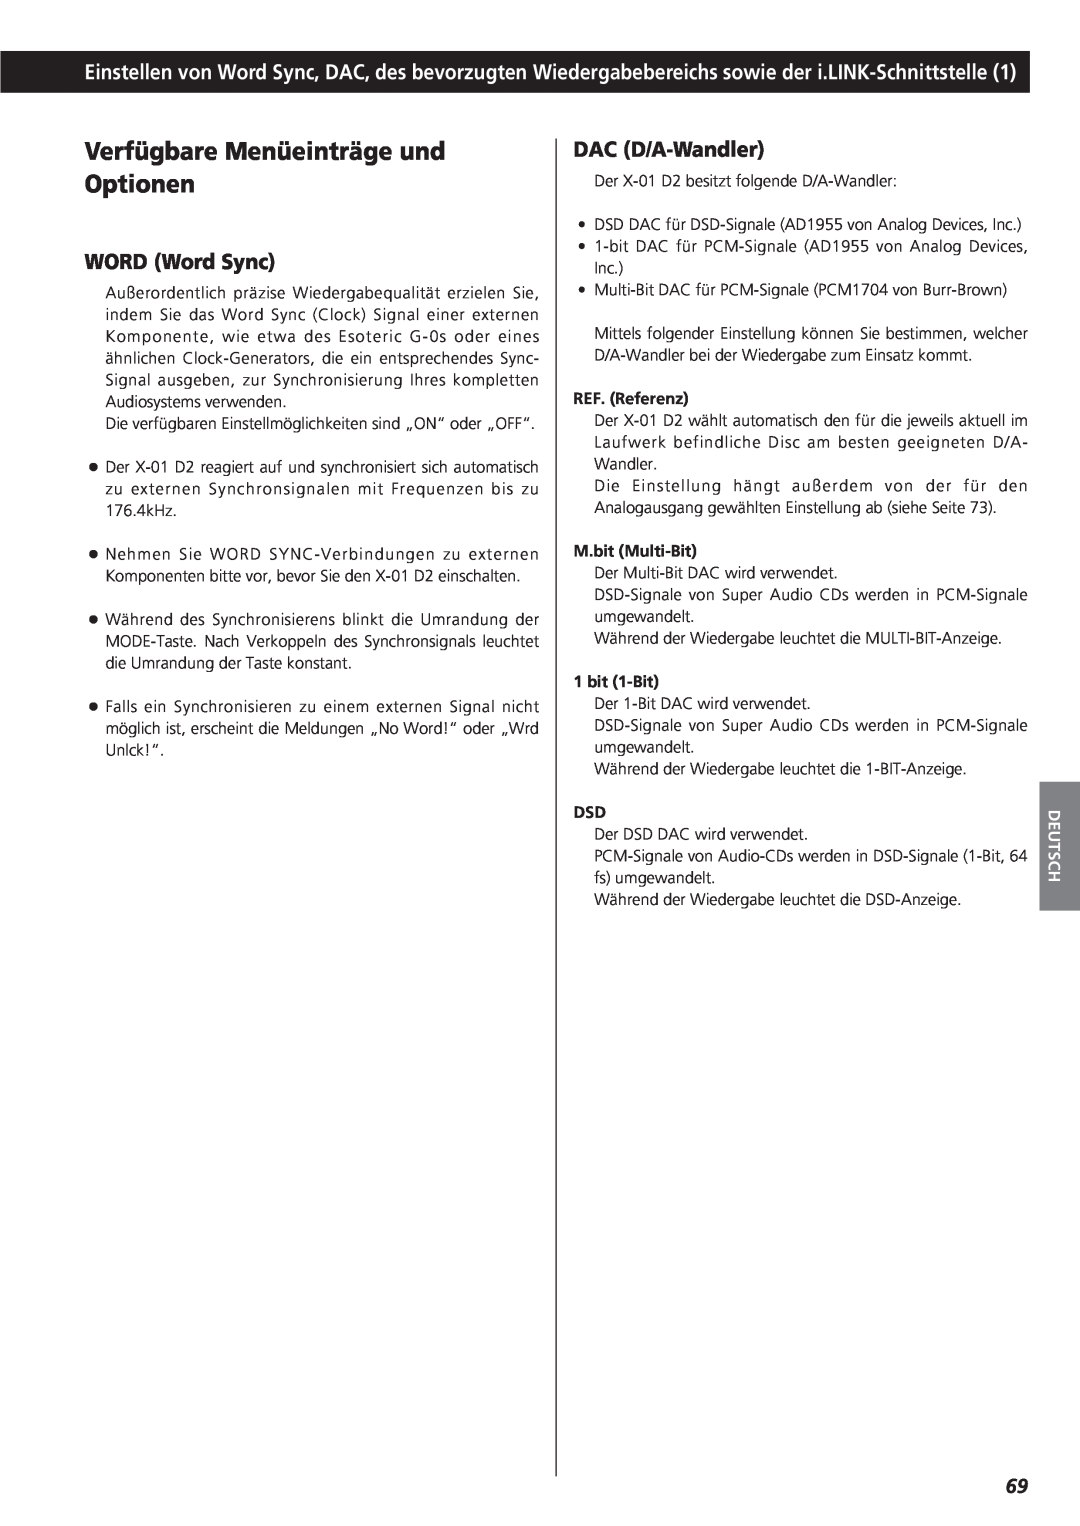 Teac X-01 D2 owner manual Verfügbare Menüeinträge und Optionen, WORD Word Sync, DAC D/A-Wandler, Deutsch 